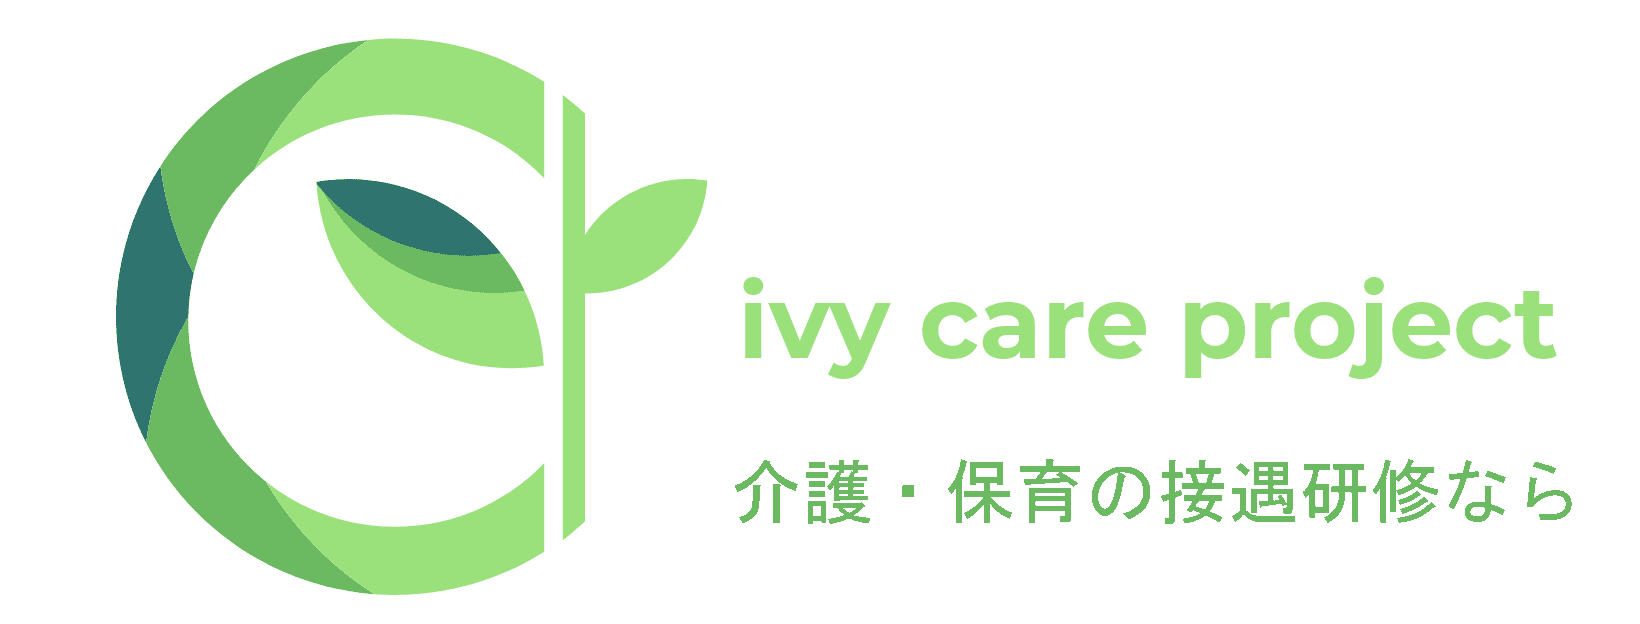 福岡の介護・保育の接遇研修なら ivy-care projrct